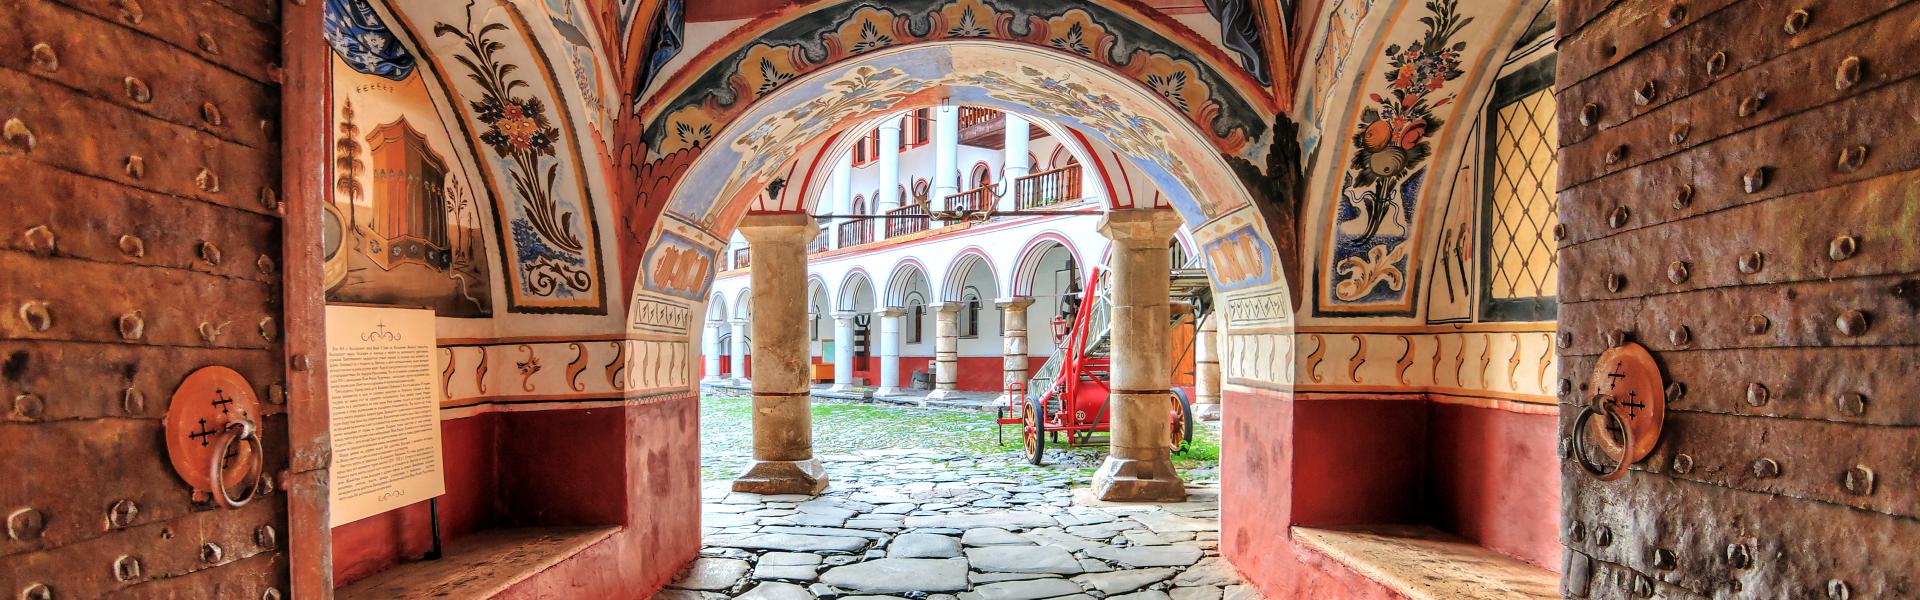 Uw mooie vakantiehuis in Bulgarije voor een onvergetelijk verblijf - Casamundo